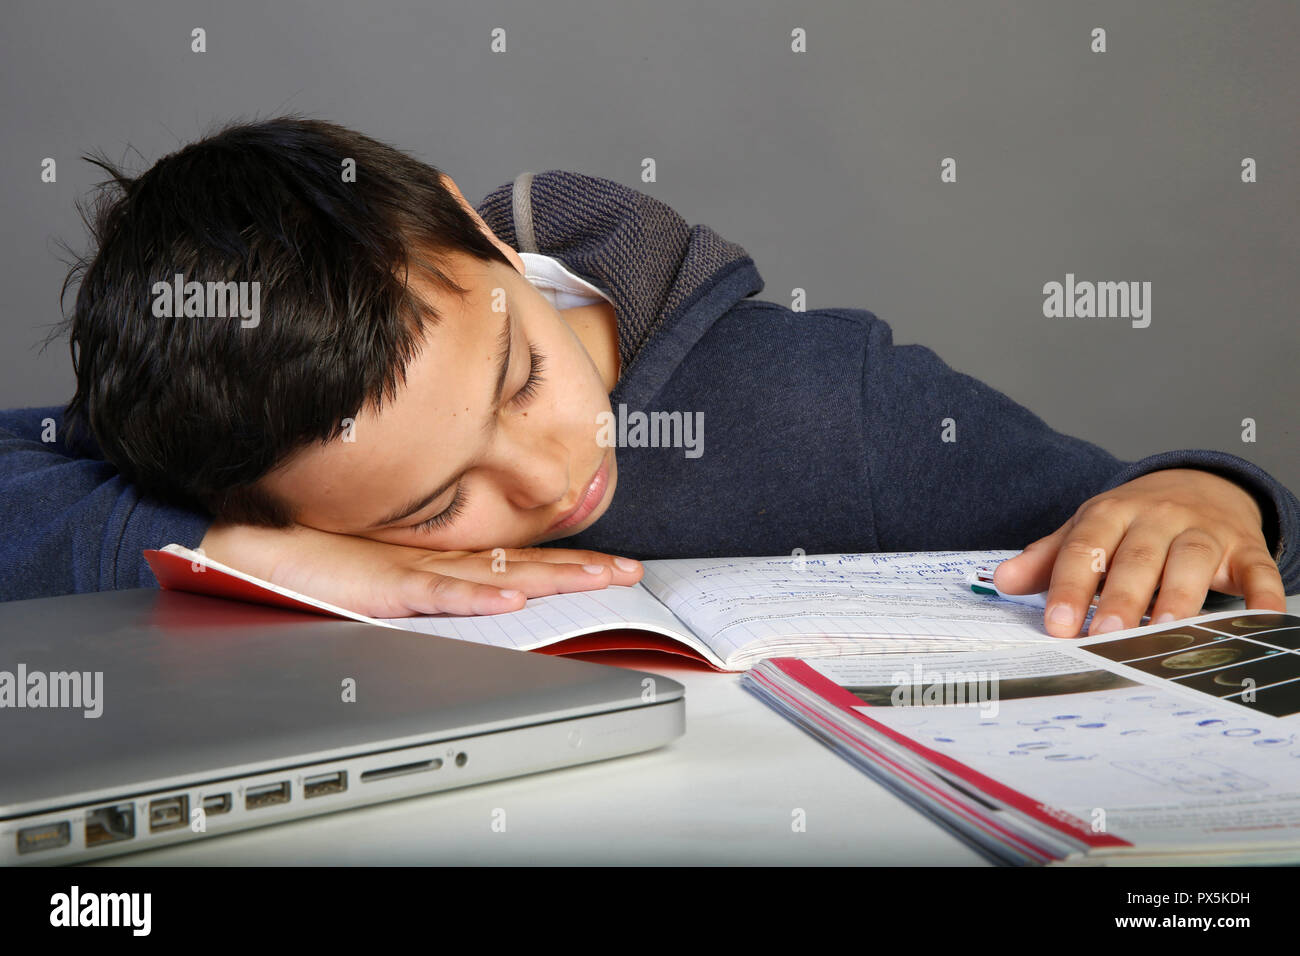 12-anno-vecchio scolaro addormentarsi sul suo dovere. Parigi, Francia. Foto Stock